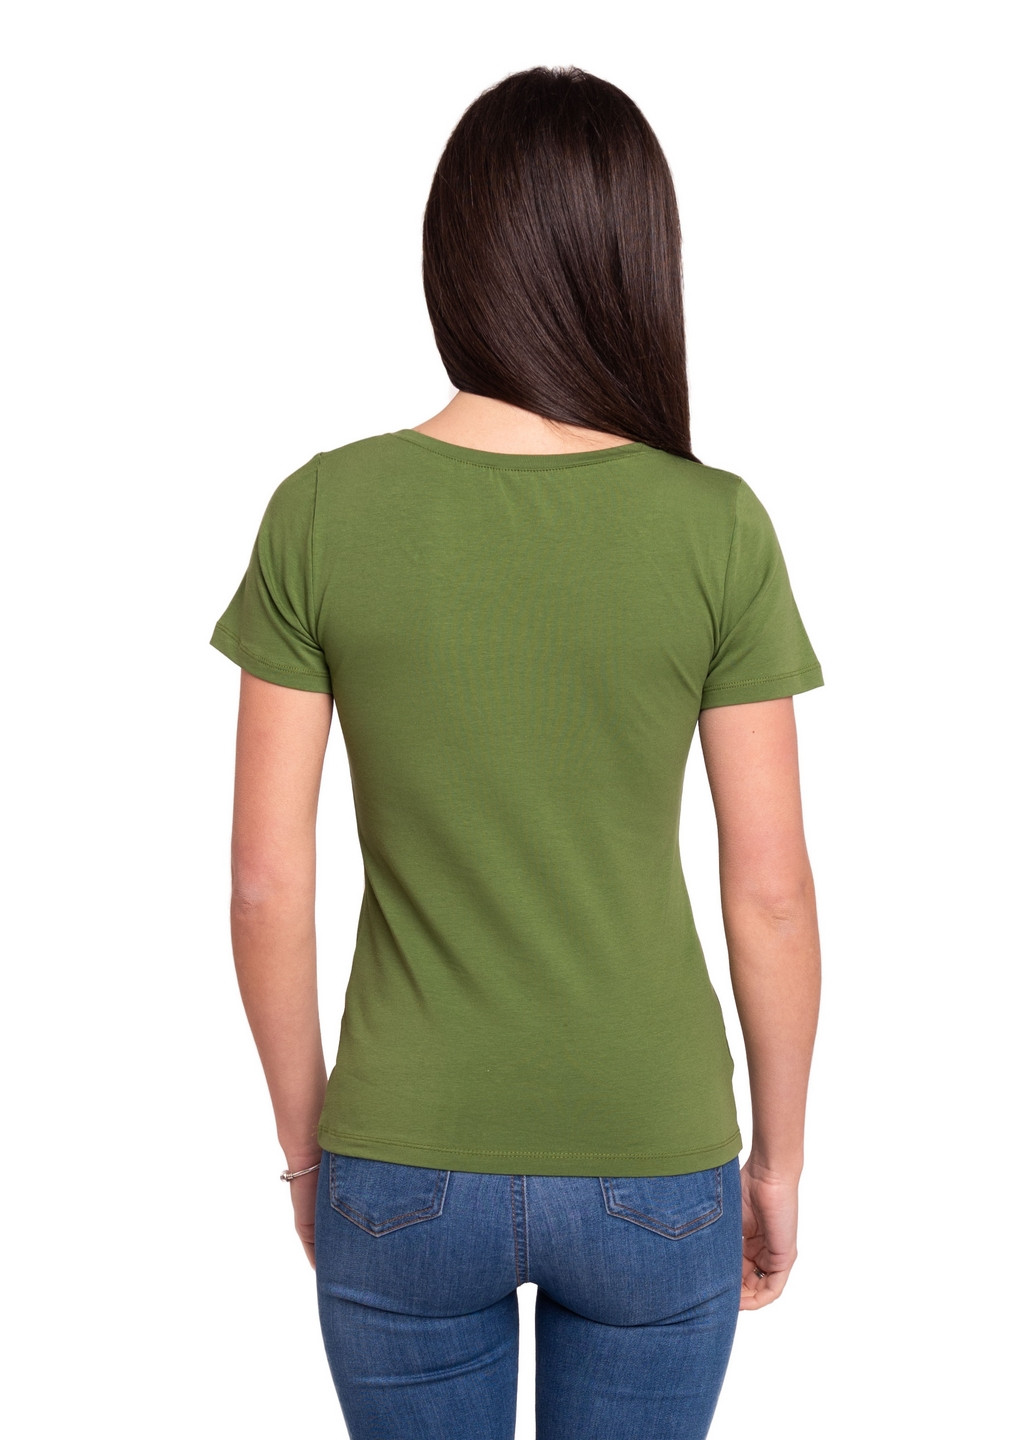 Оливковая всесезон футболка женская Наталюкс 41-2347